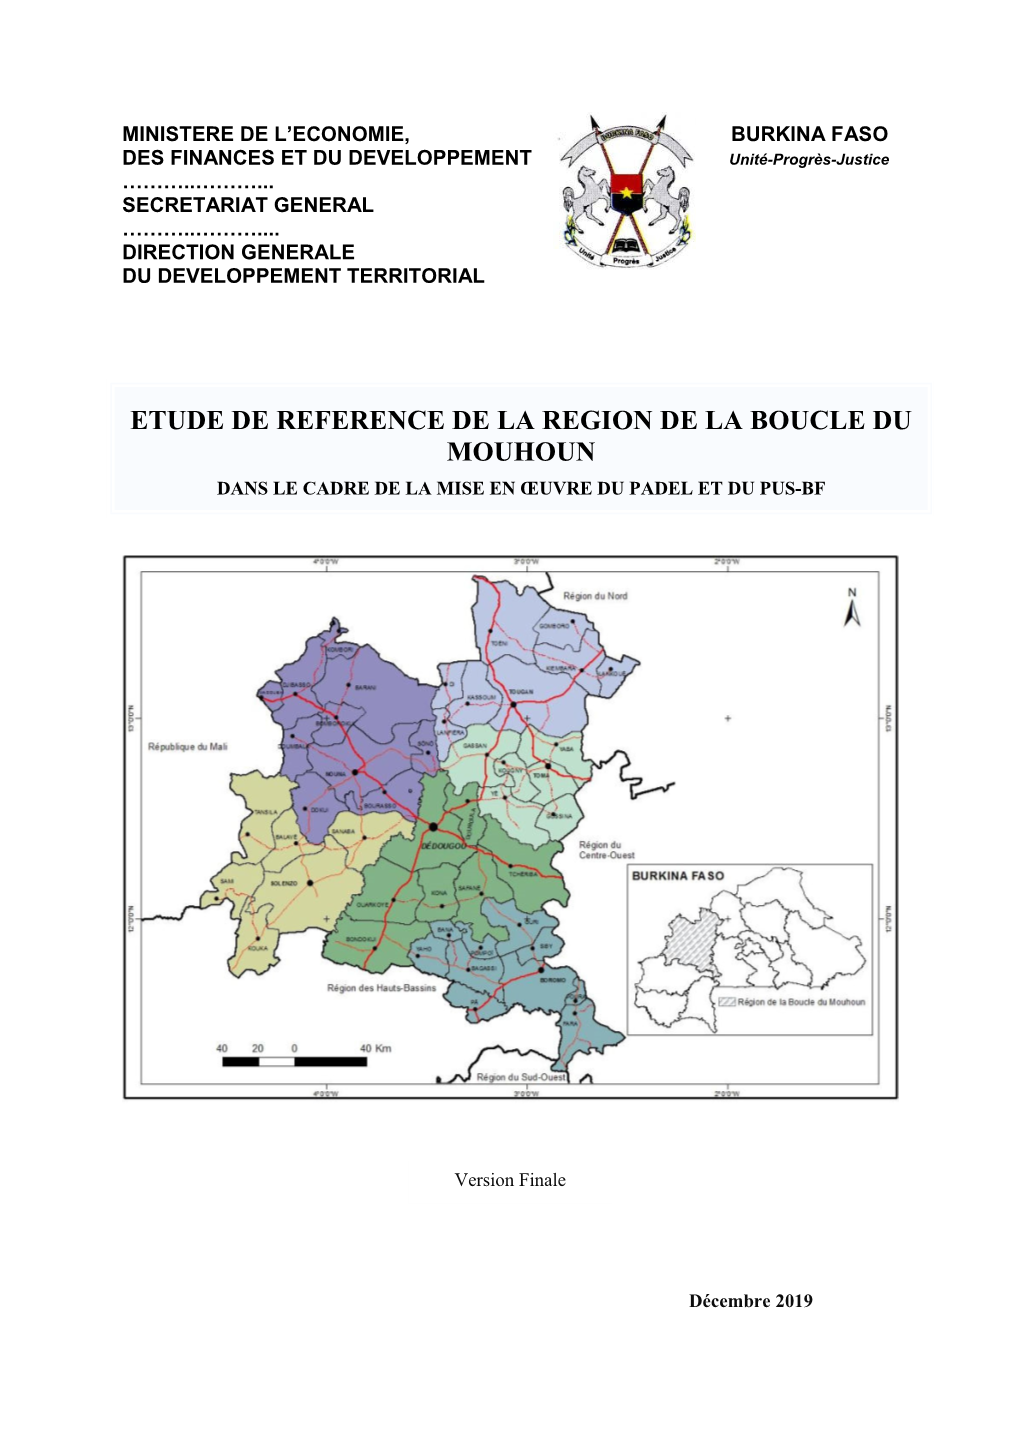 Etude De Reference De La Region De La Boucle Du Mouhoun Dans Le Cadre De La Mise En Œuvre Du Padel Et Du Pus-Bf